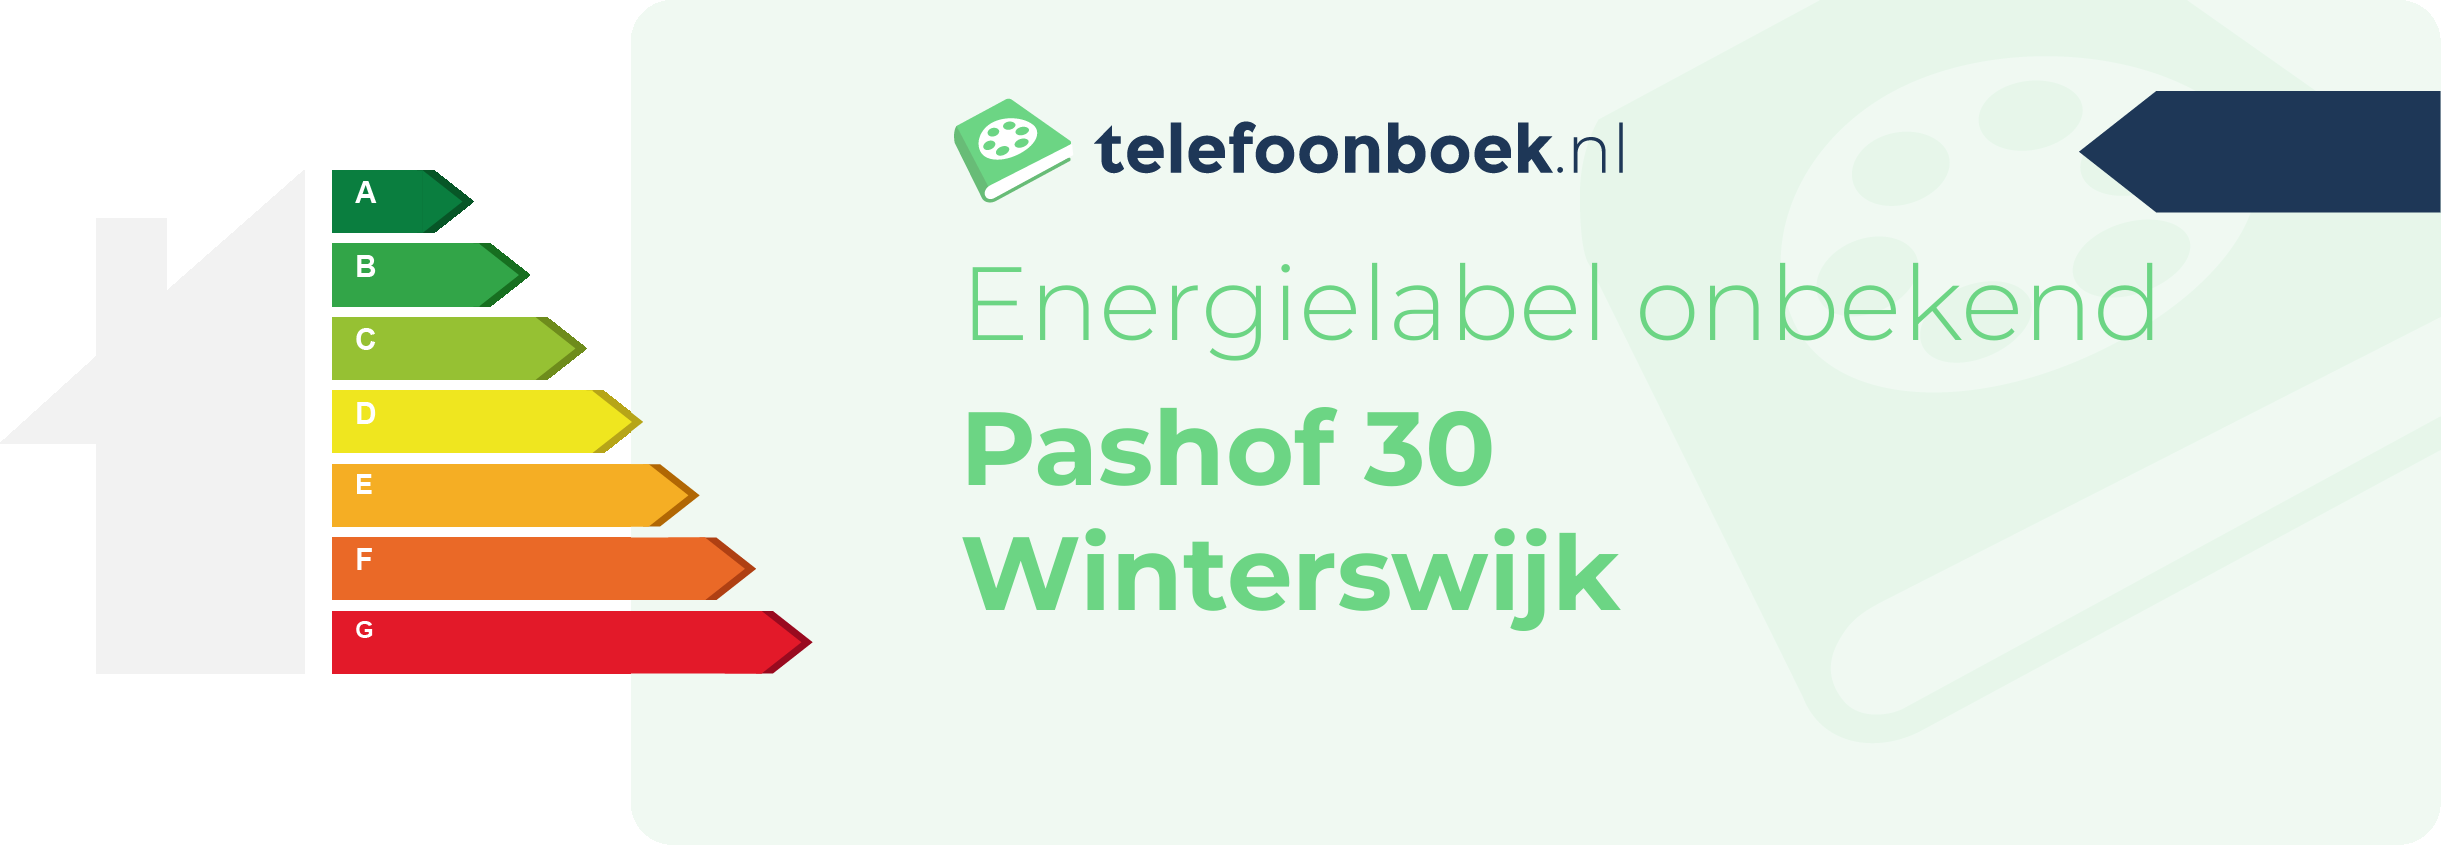 Energielabel Pashof 30 Winterswijk